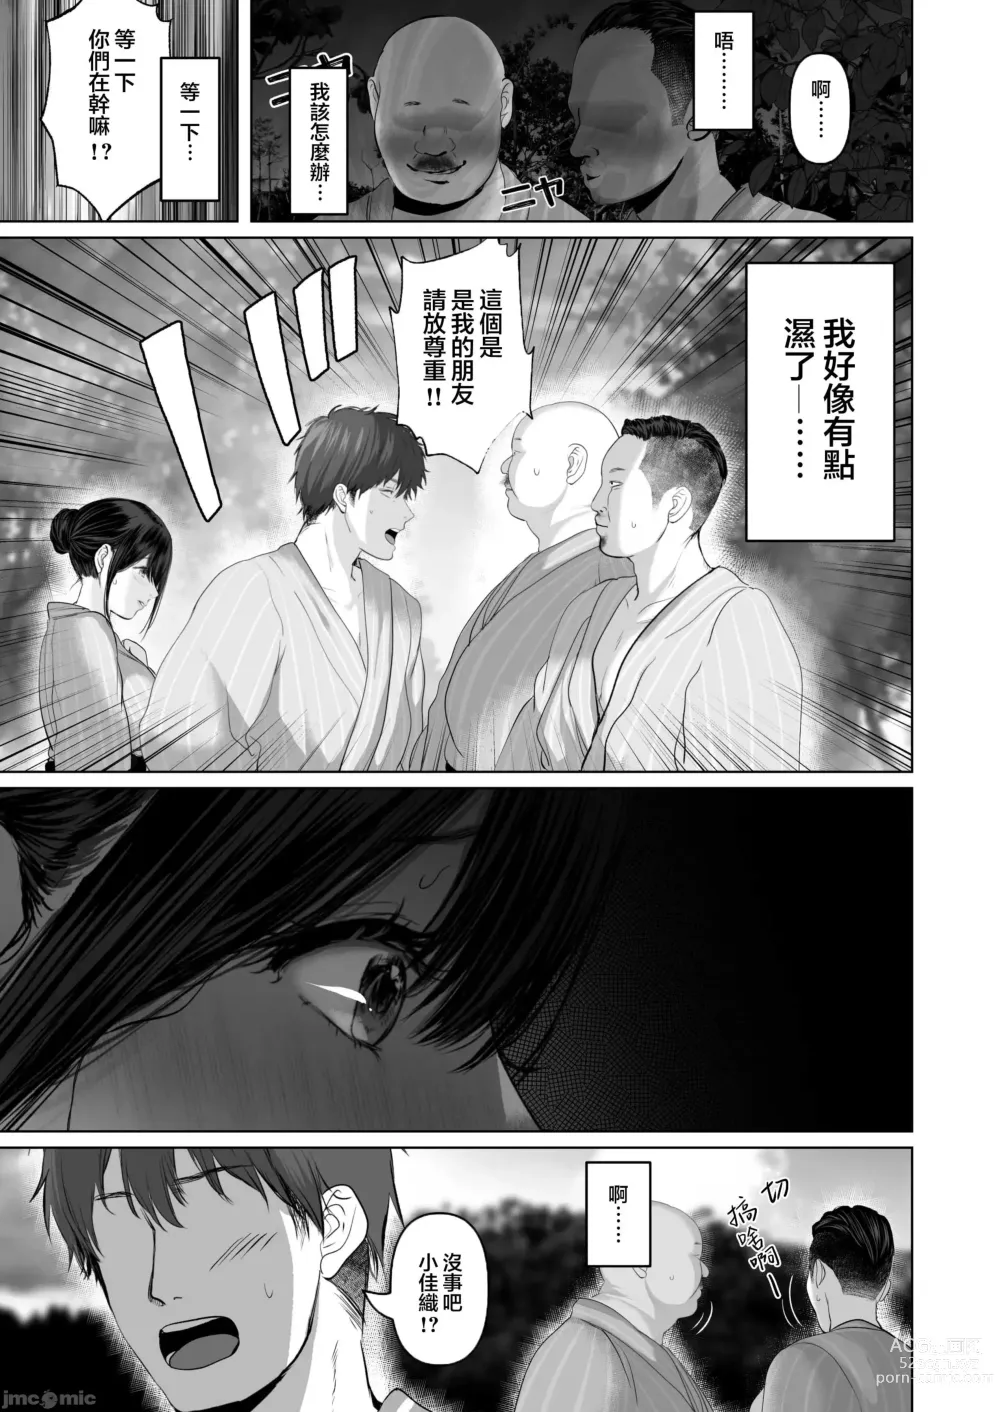 Page 553 of doujinshi Anata ga Nozomu nara 1-5